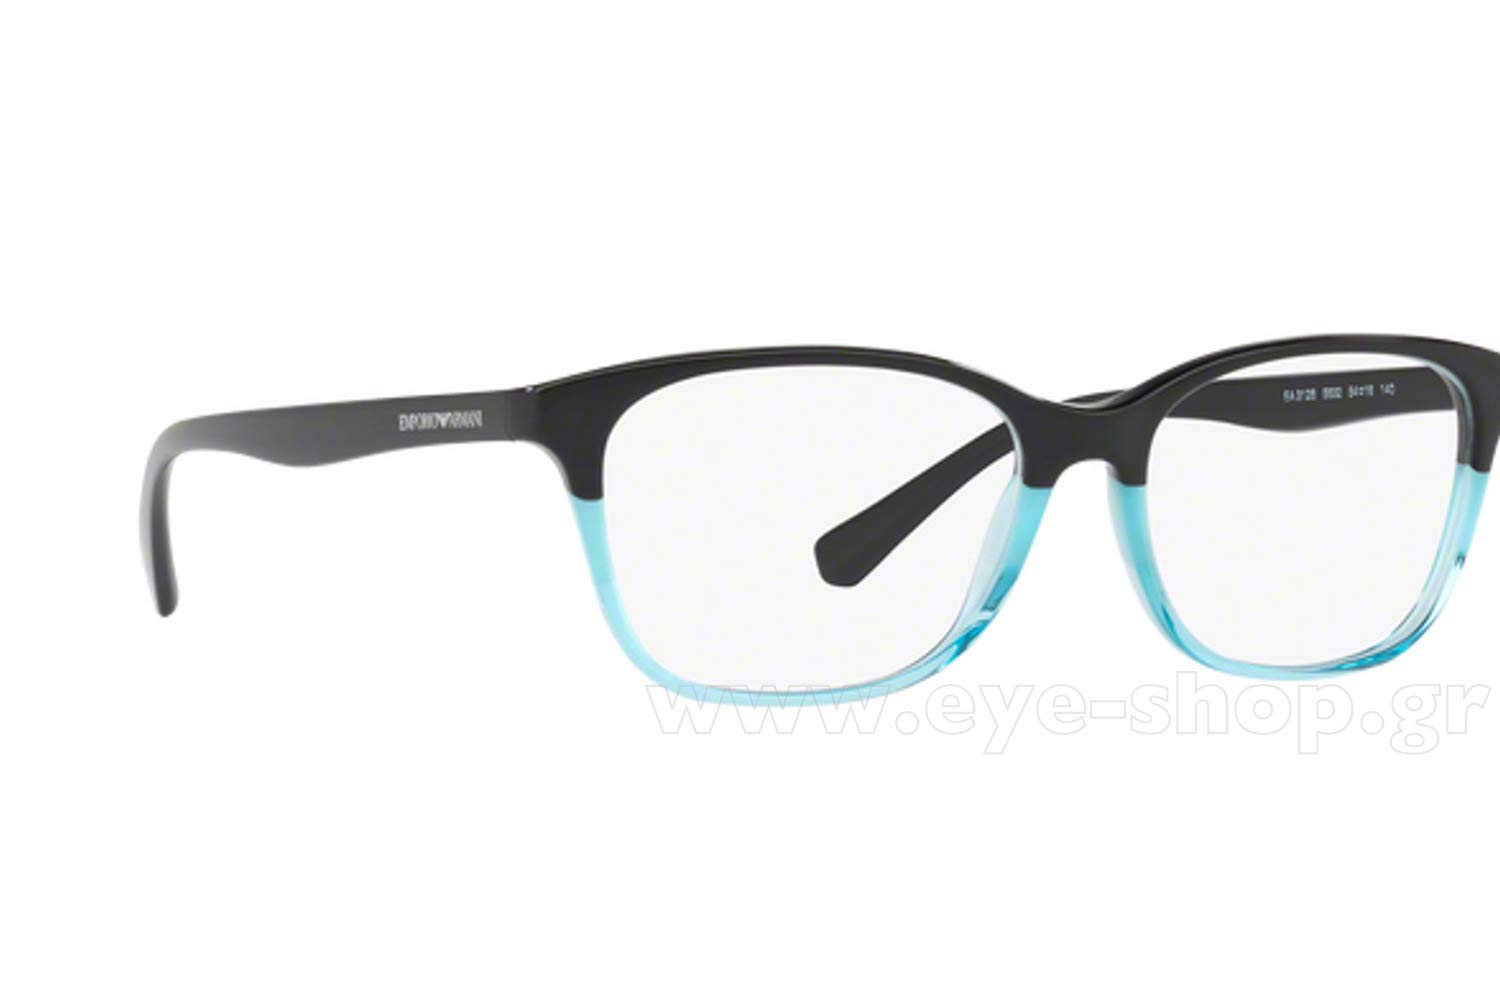 emporio armani glasses womens